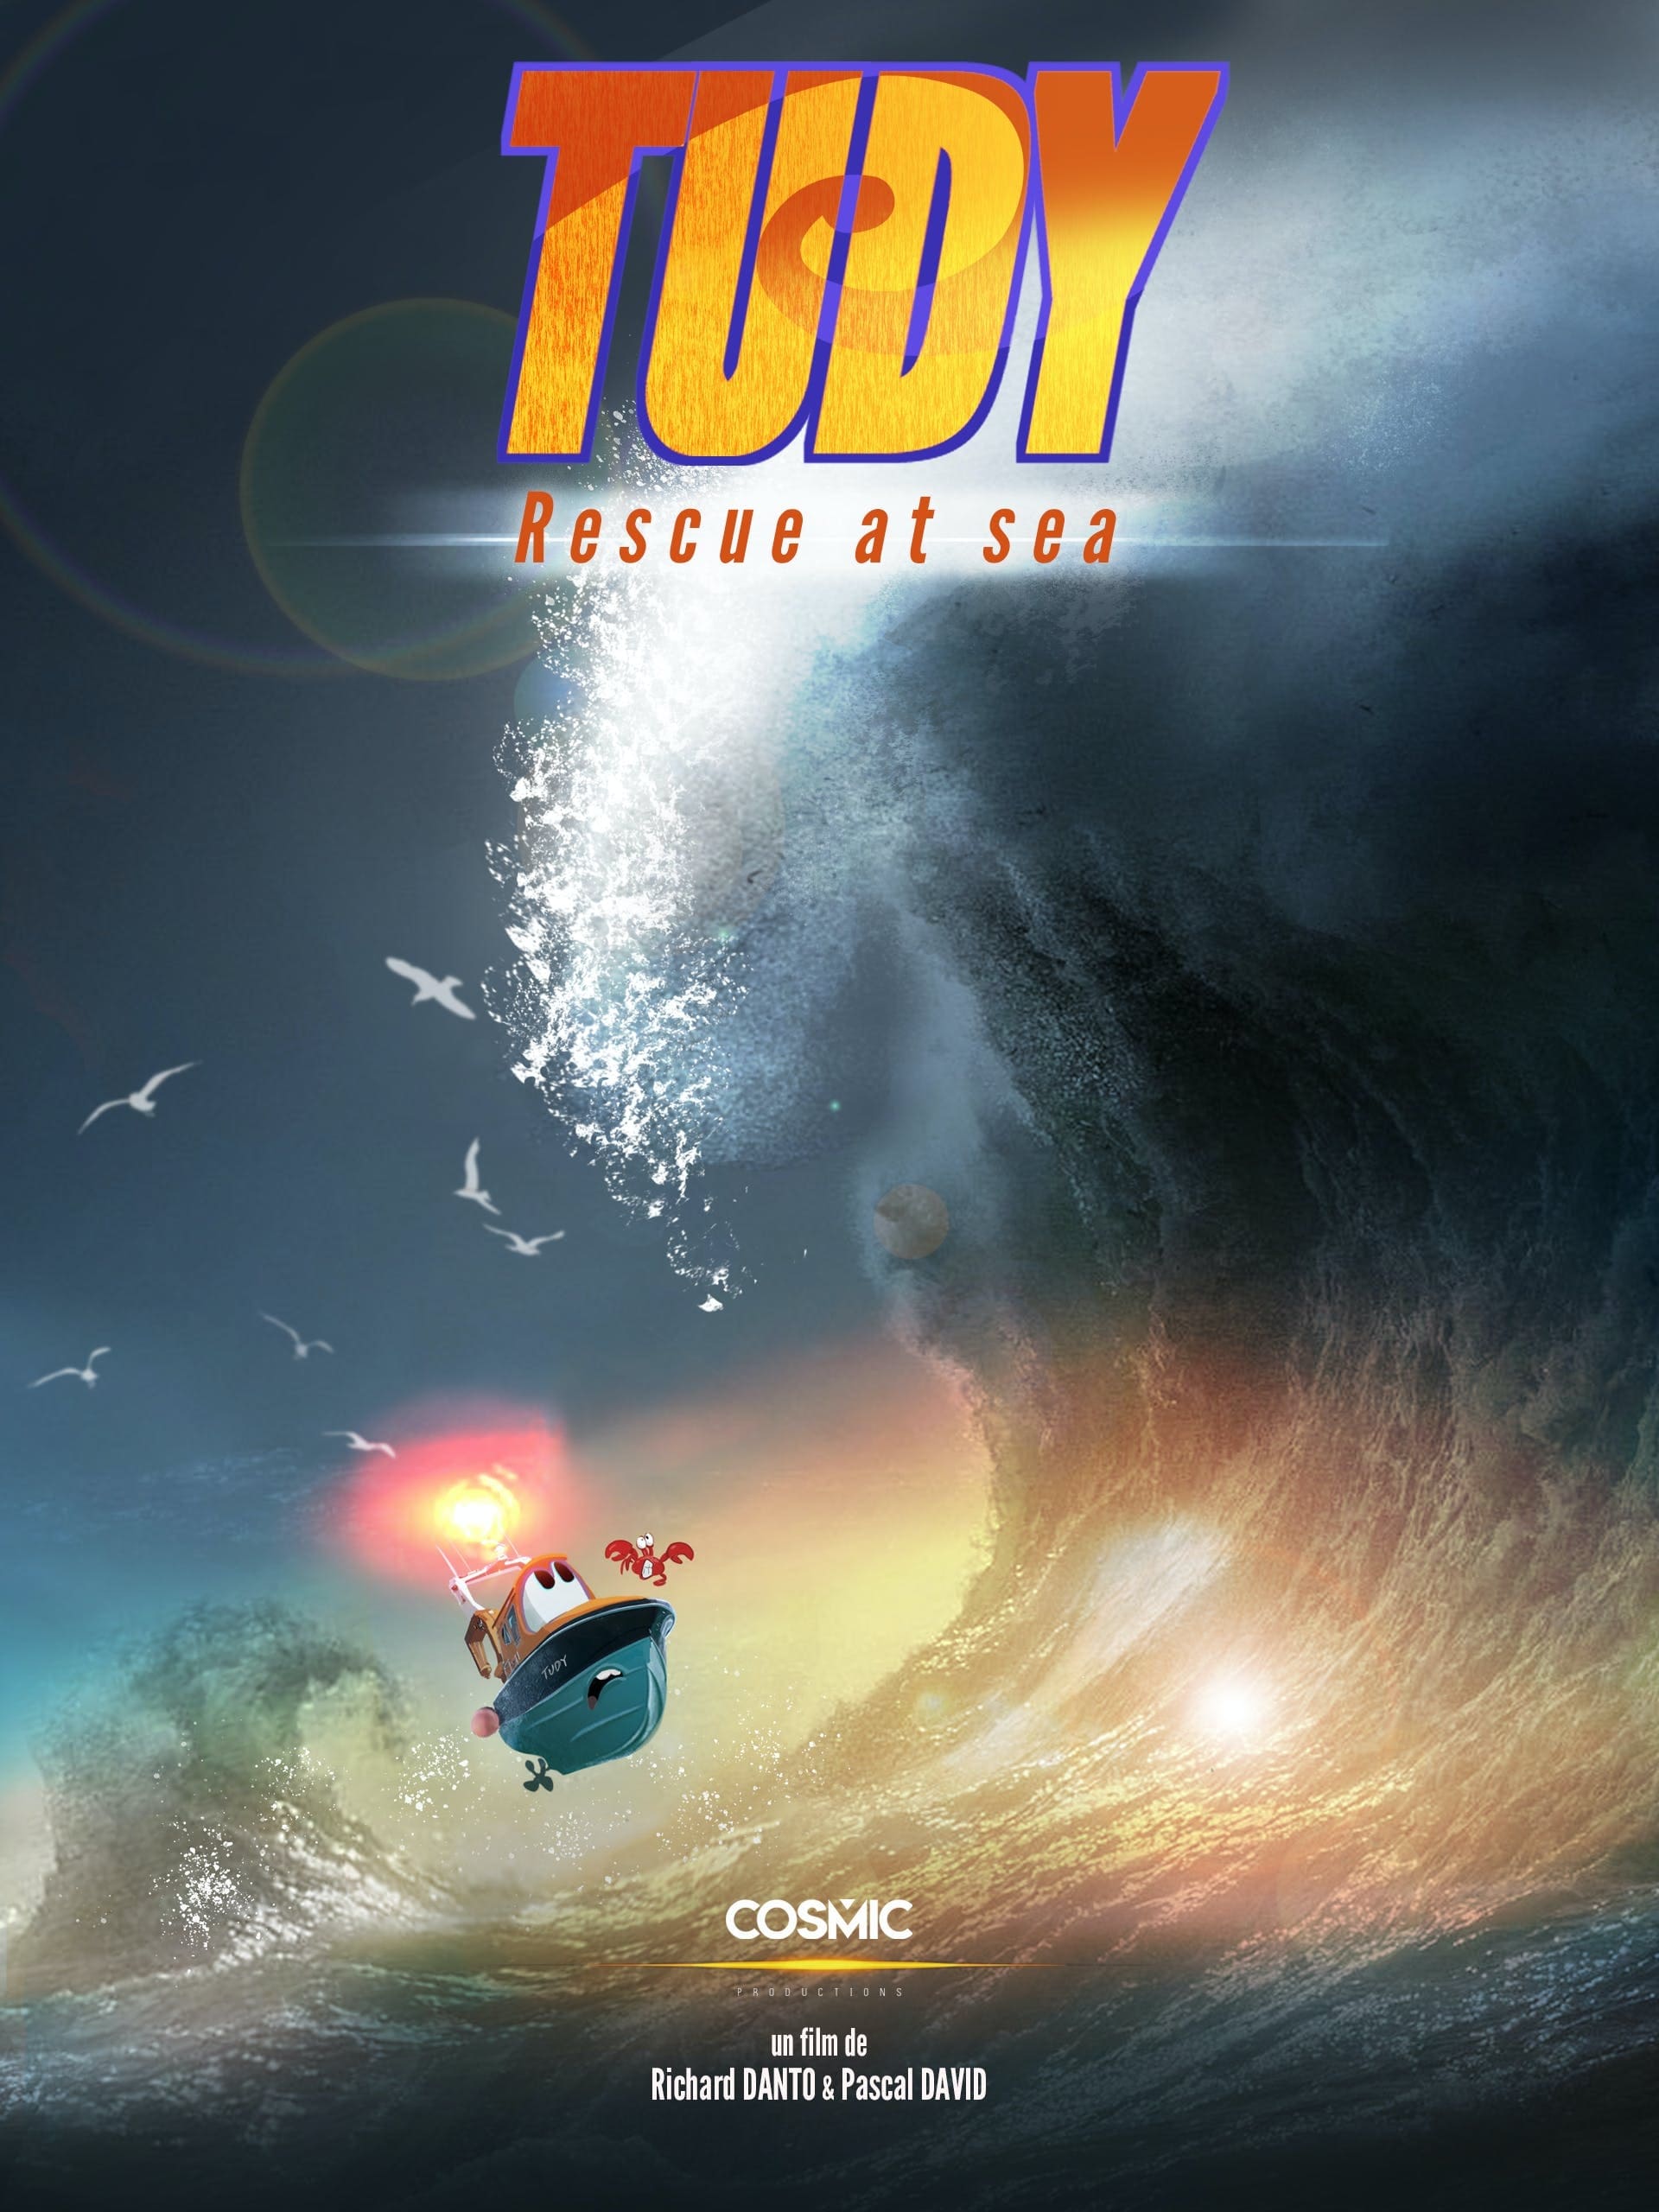 Tudy — Rescue at Sea